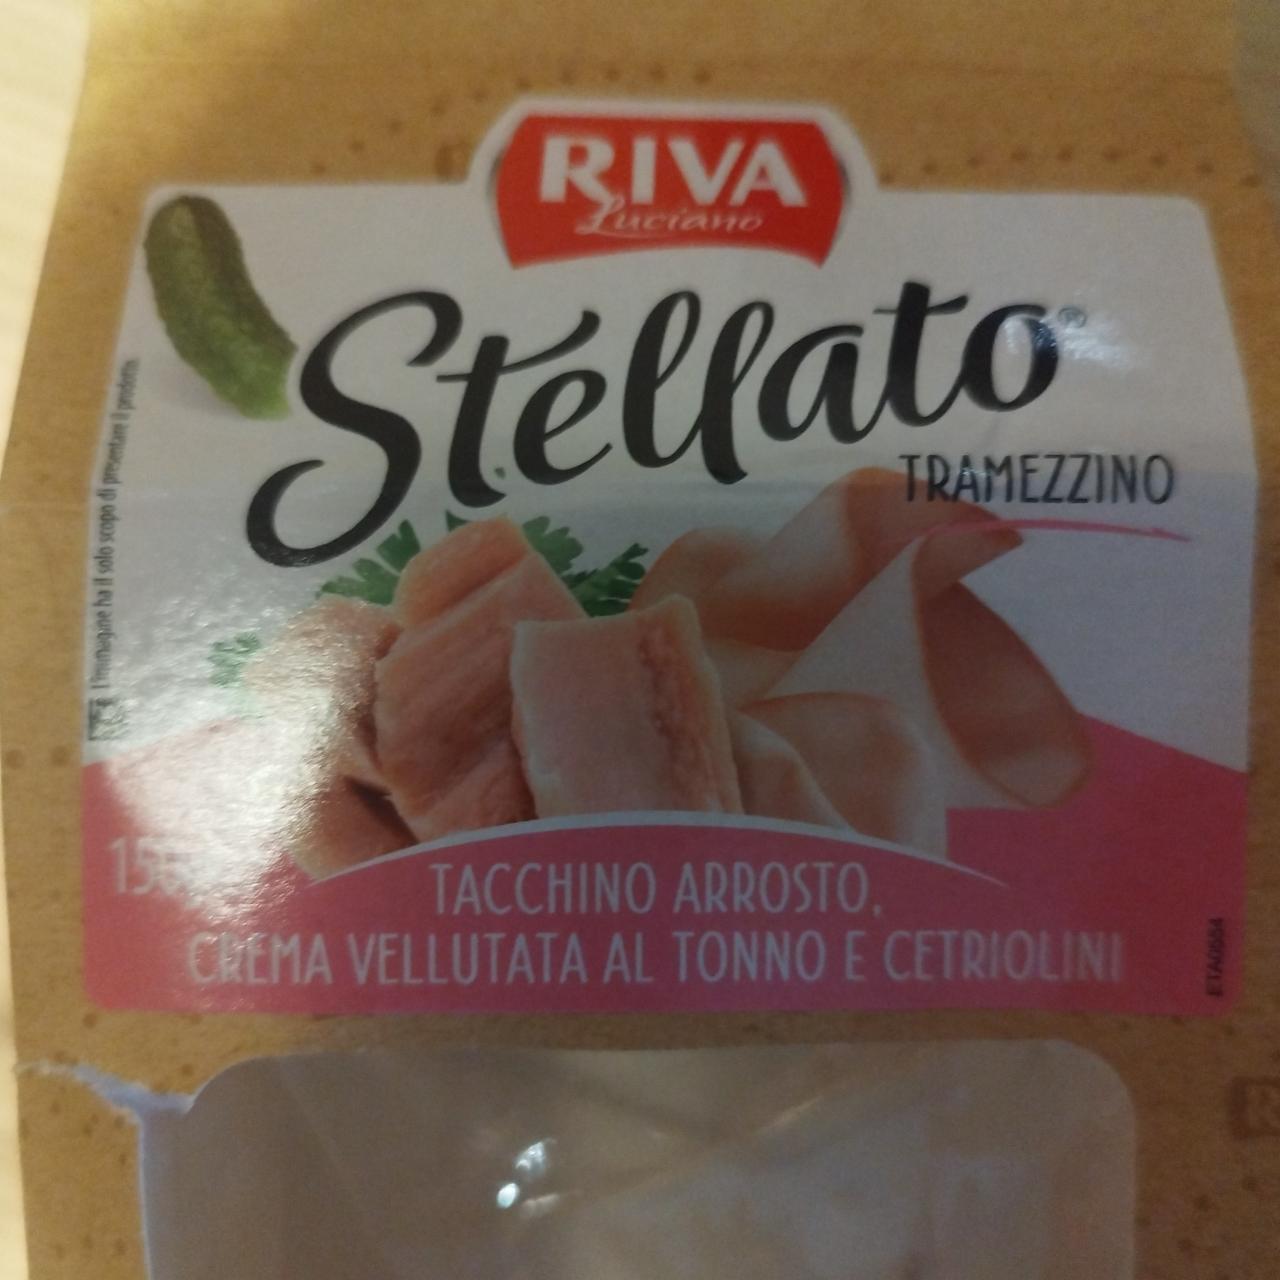 Fotografie - Stellato tramezzino tacchino arrosto, crema vellutata al tonno e cetriolini Riva